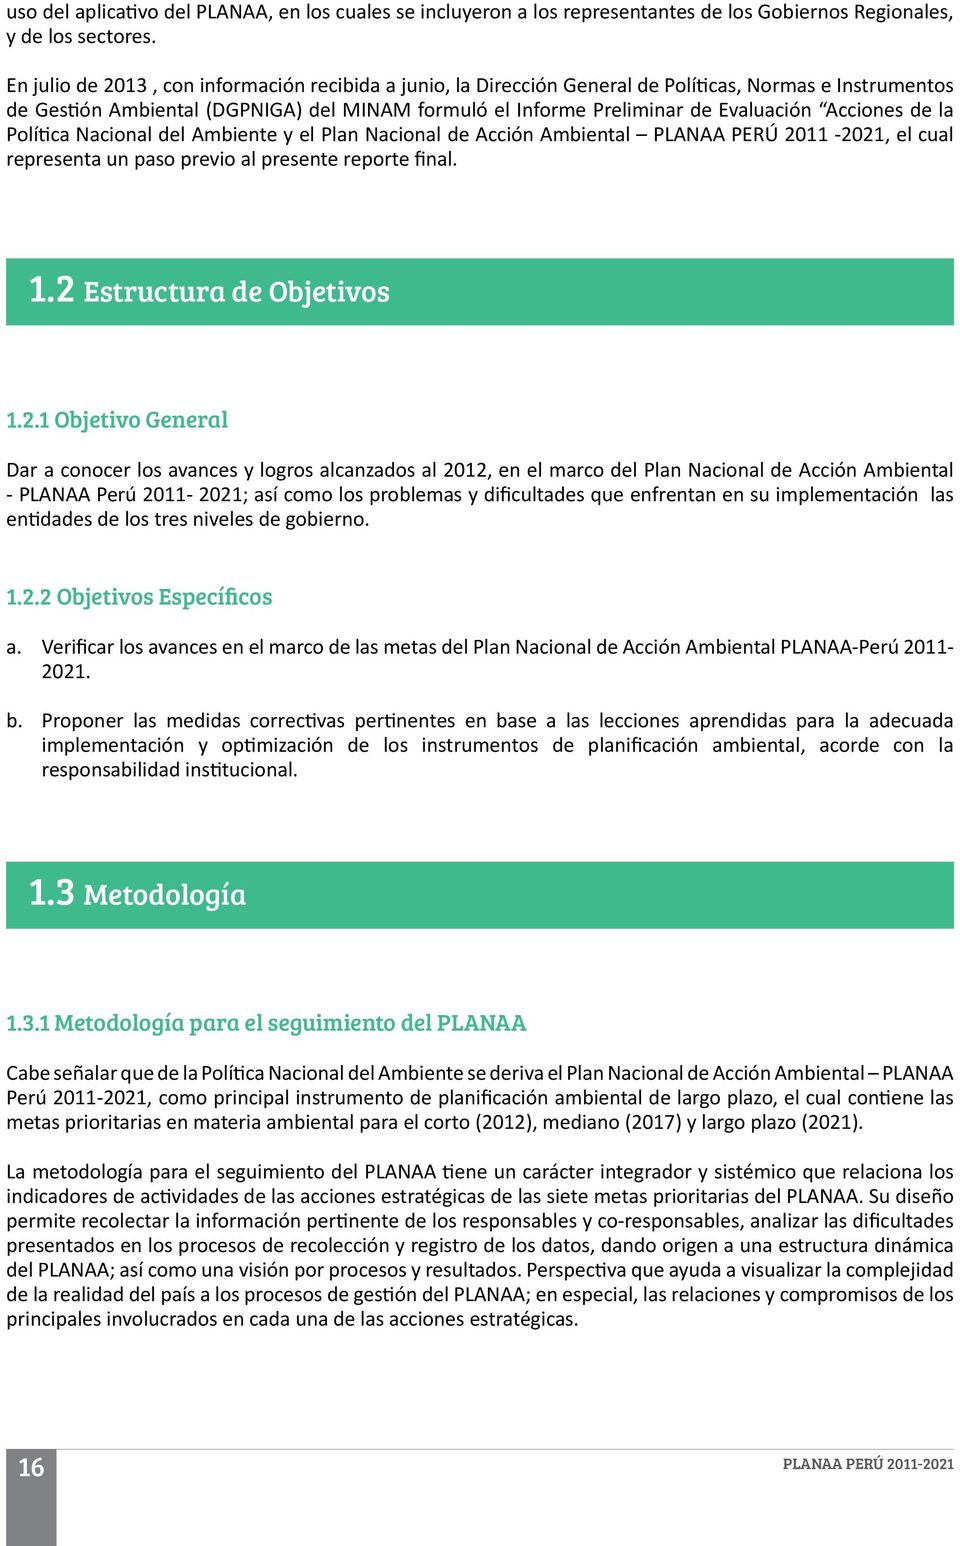 Acciones de la Política Nacional del Ambiente y el Plan Nacional de Acción Ambiental PLANAA PERÚ 2011-2021, el cual representa un paso previo al presente reporte final. 1.2 Estructura de Objetivos 1.